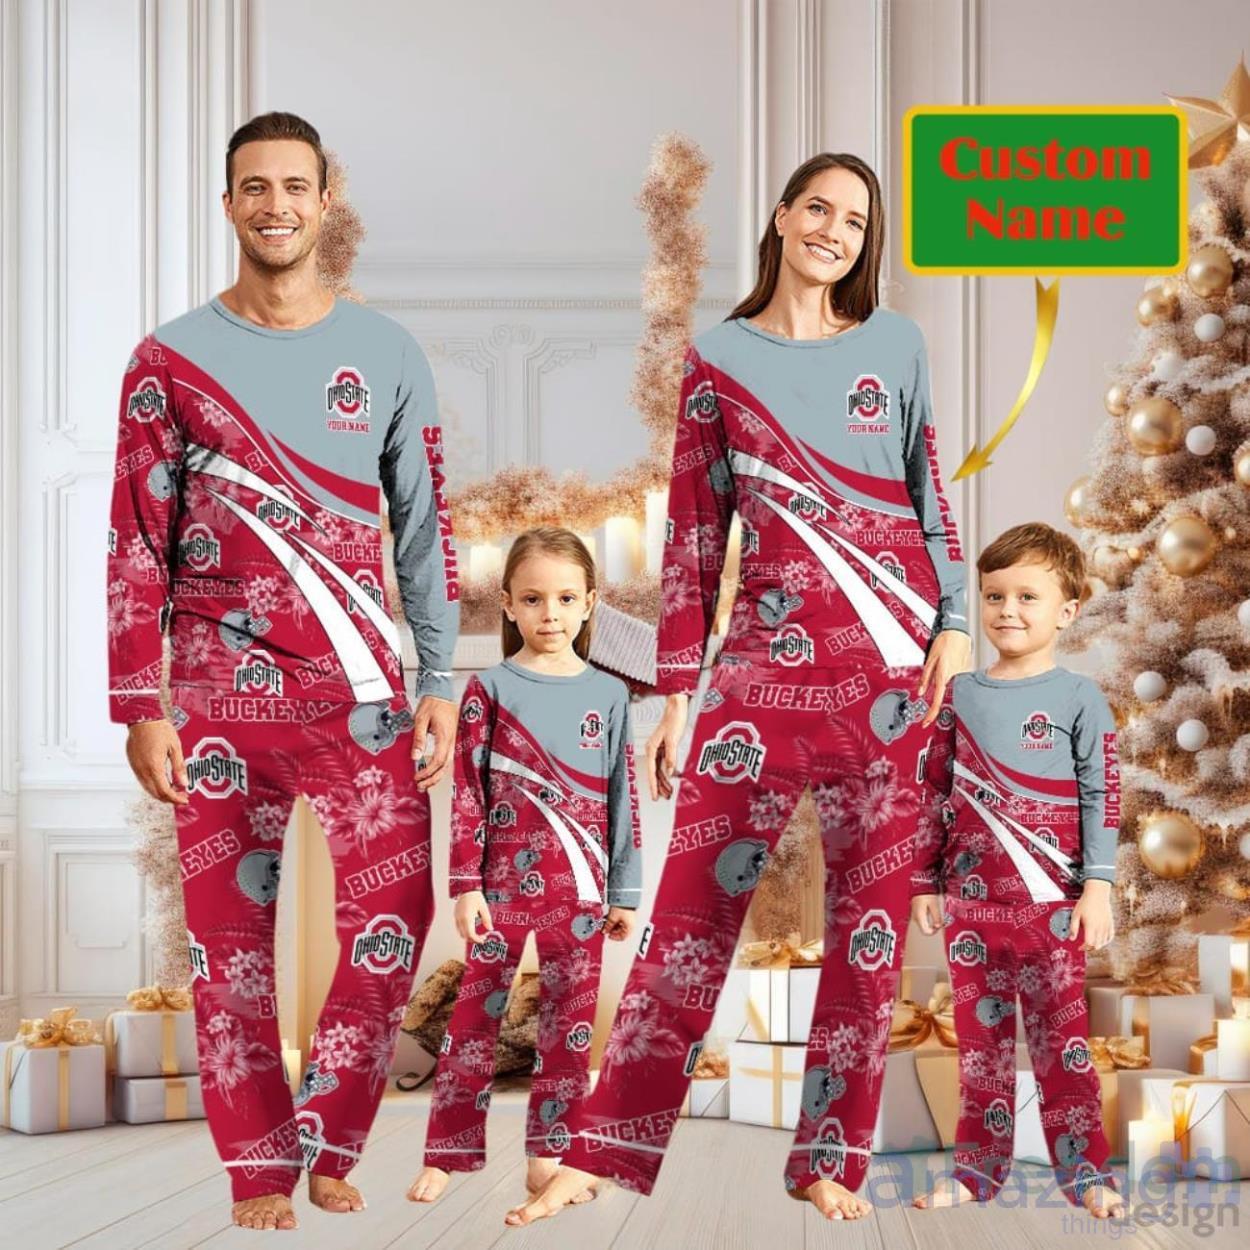 Ohio State Buckeyes Cute Christmas Pajamas Set Personalized Name